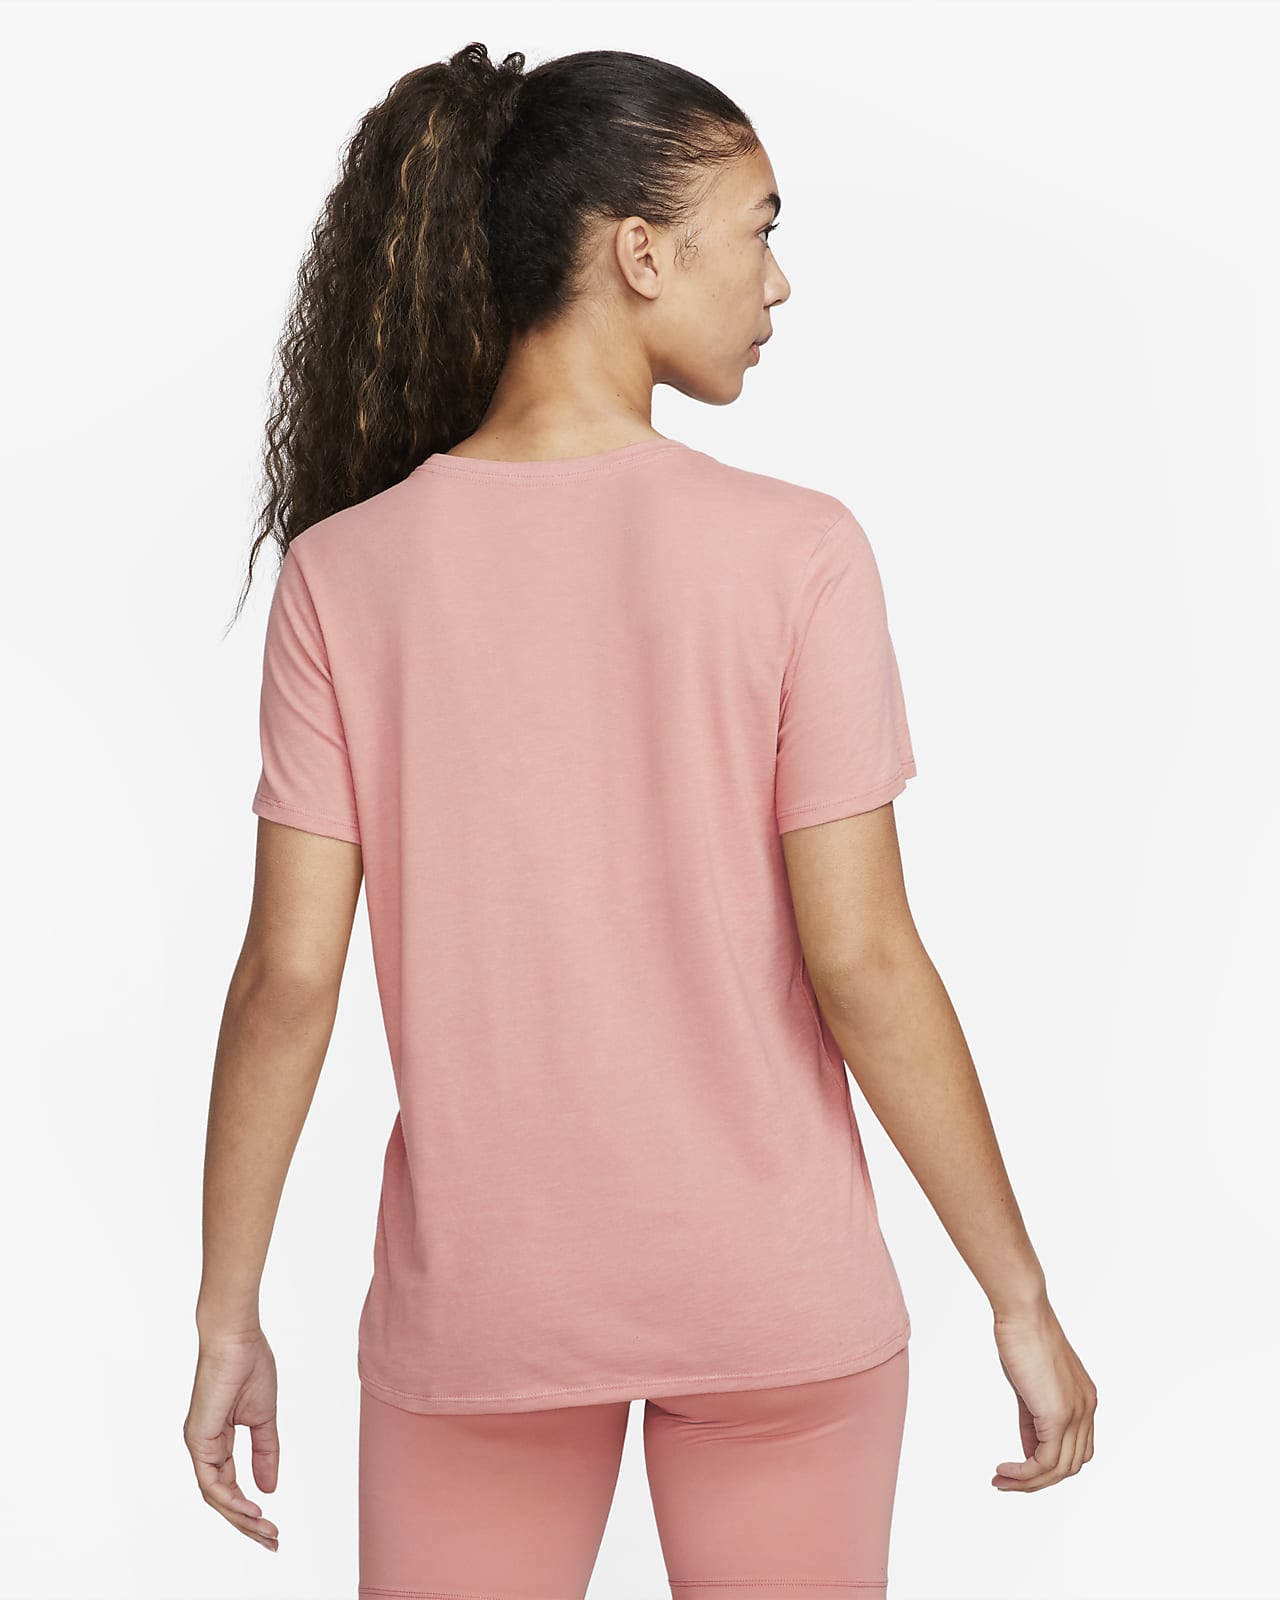 Nike Women's Dri-Fit Swoosh T-Shirt in Pink, Size: Medium | FD2884-618